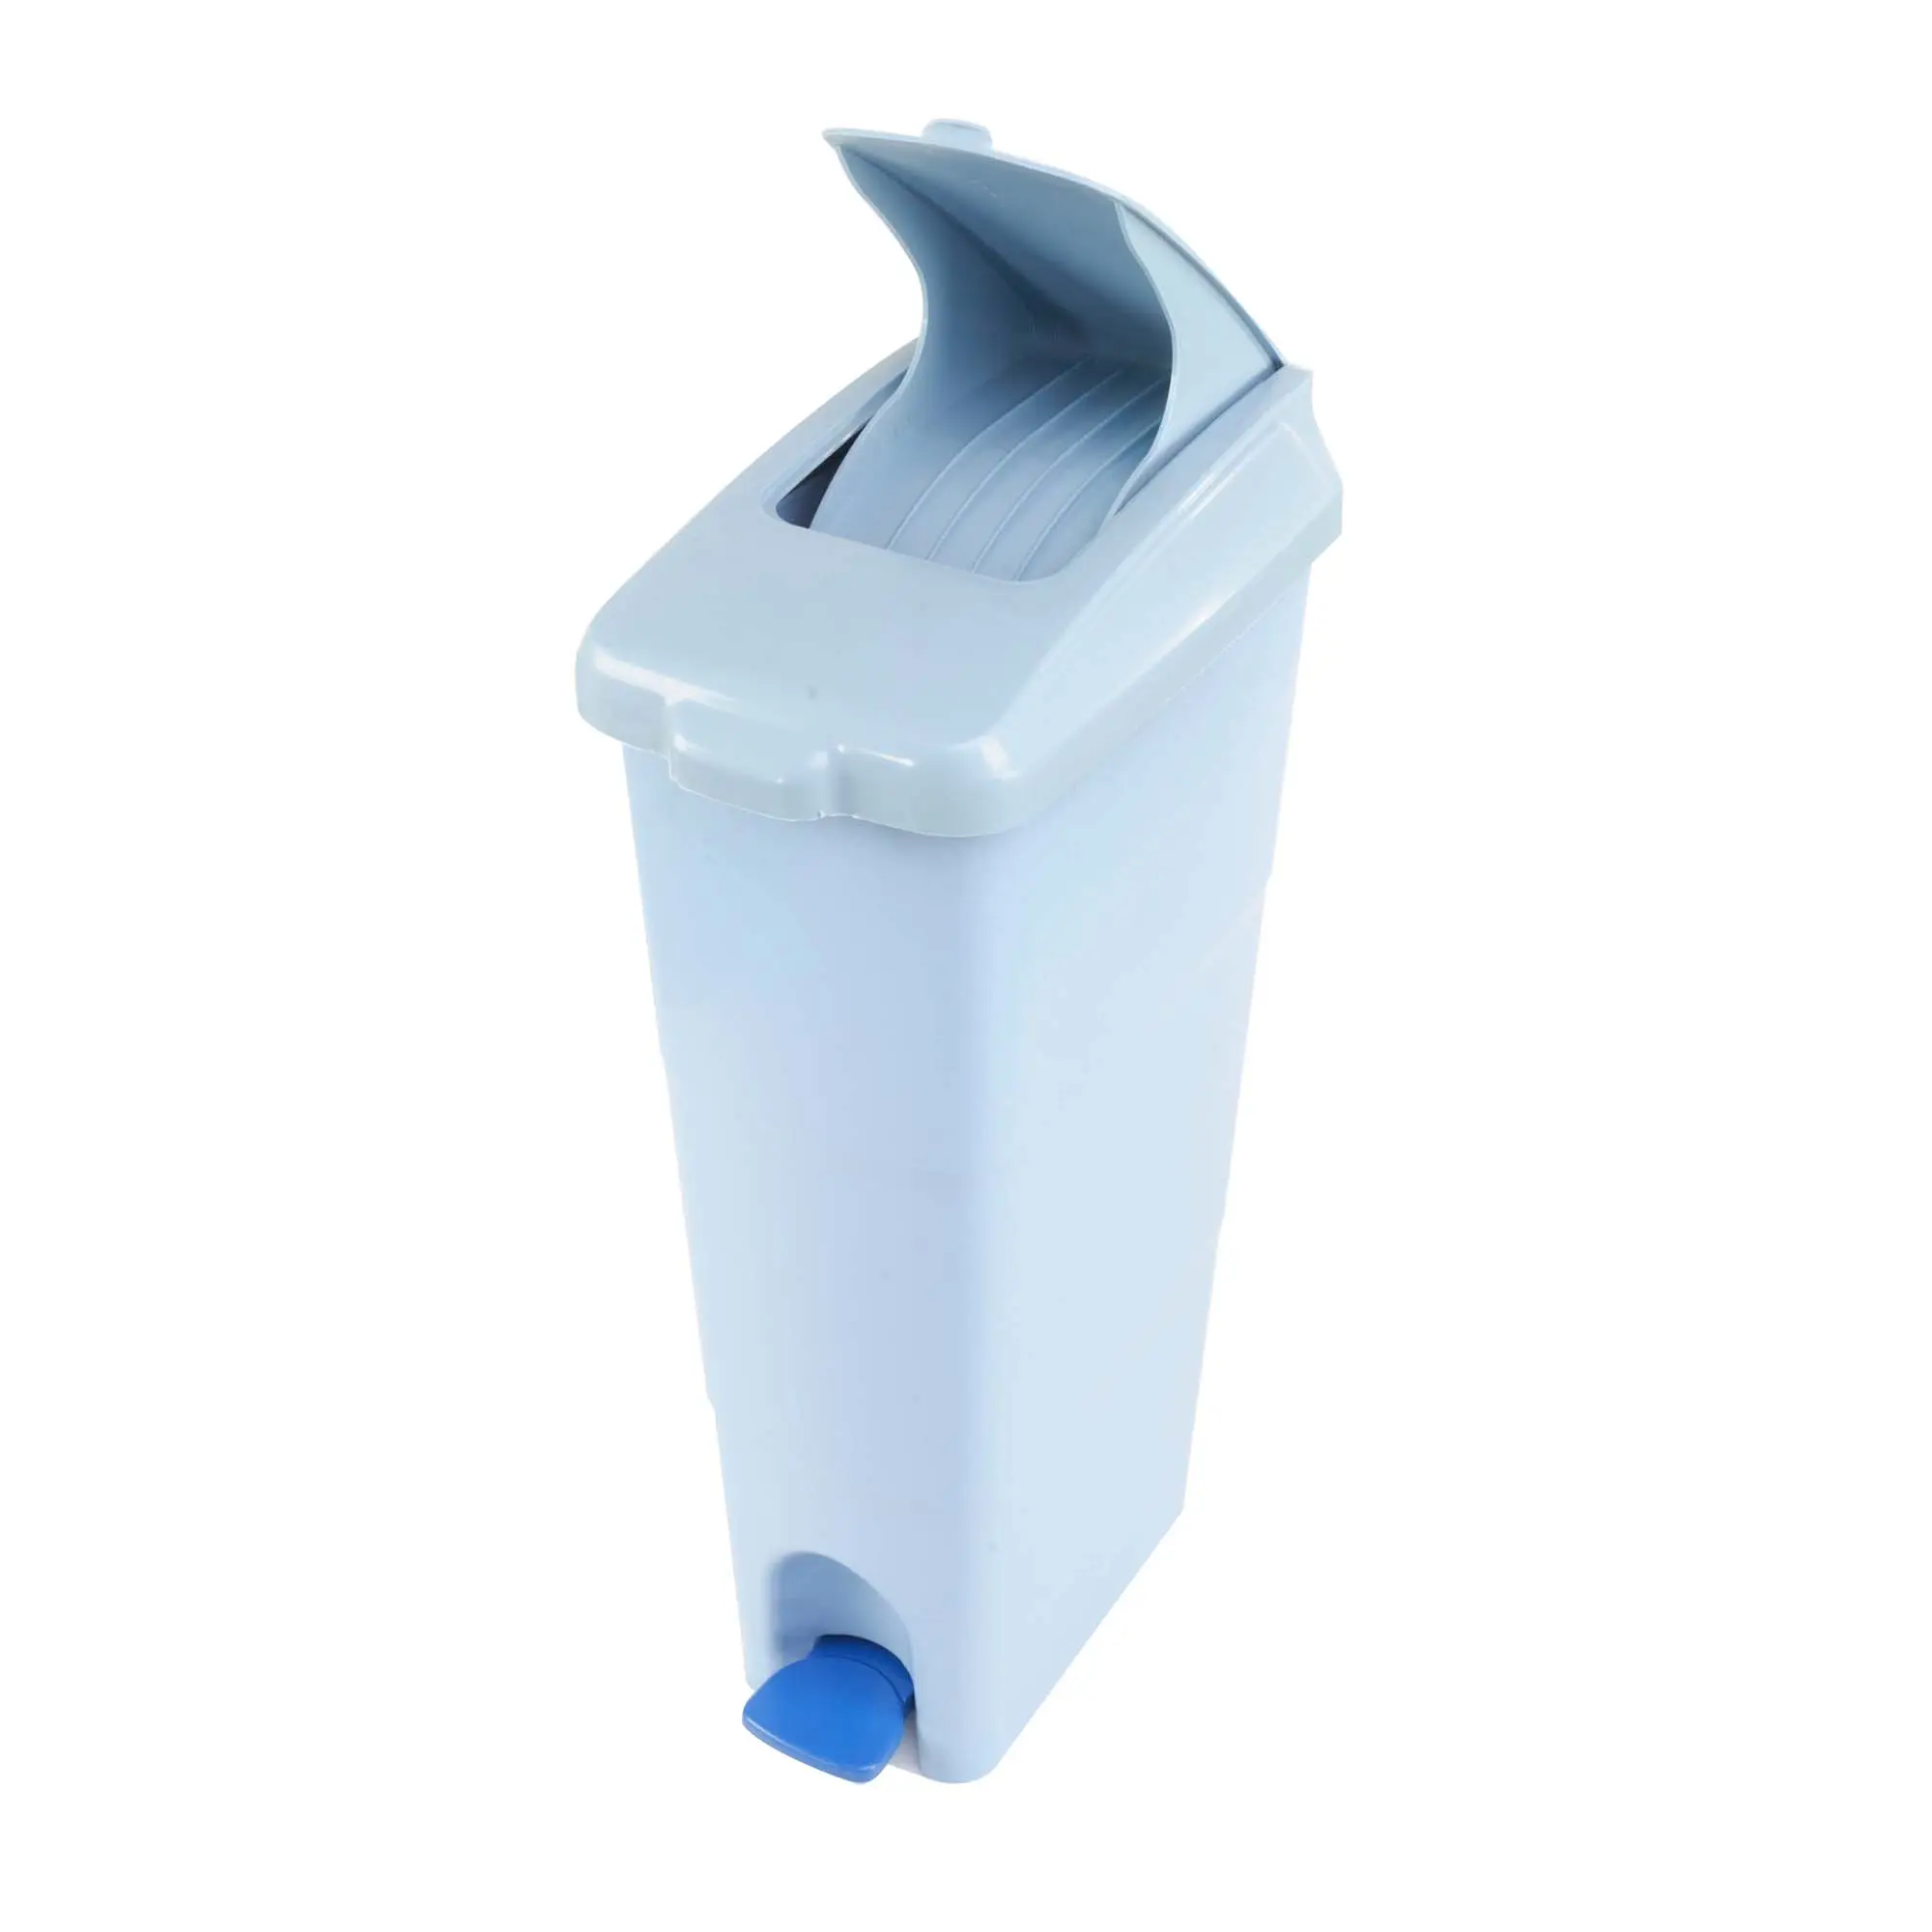 Kunden spezifische blaue oder graue Farbe Wettbewerbs fähiger Preis 18 Liter Kapazität Rechteckiges PP-Fuß pedal Lady Sanitär behälter